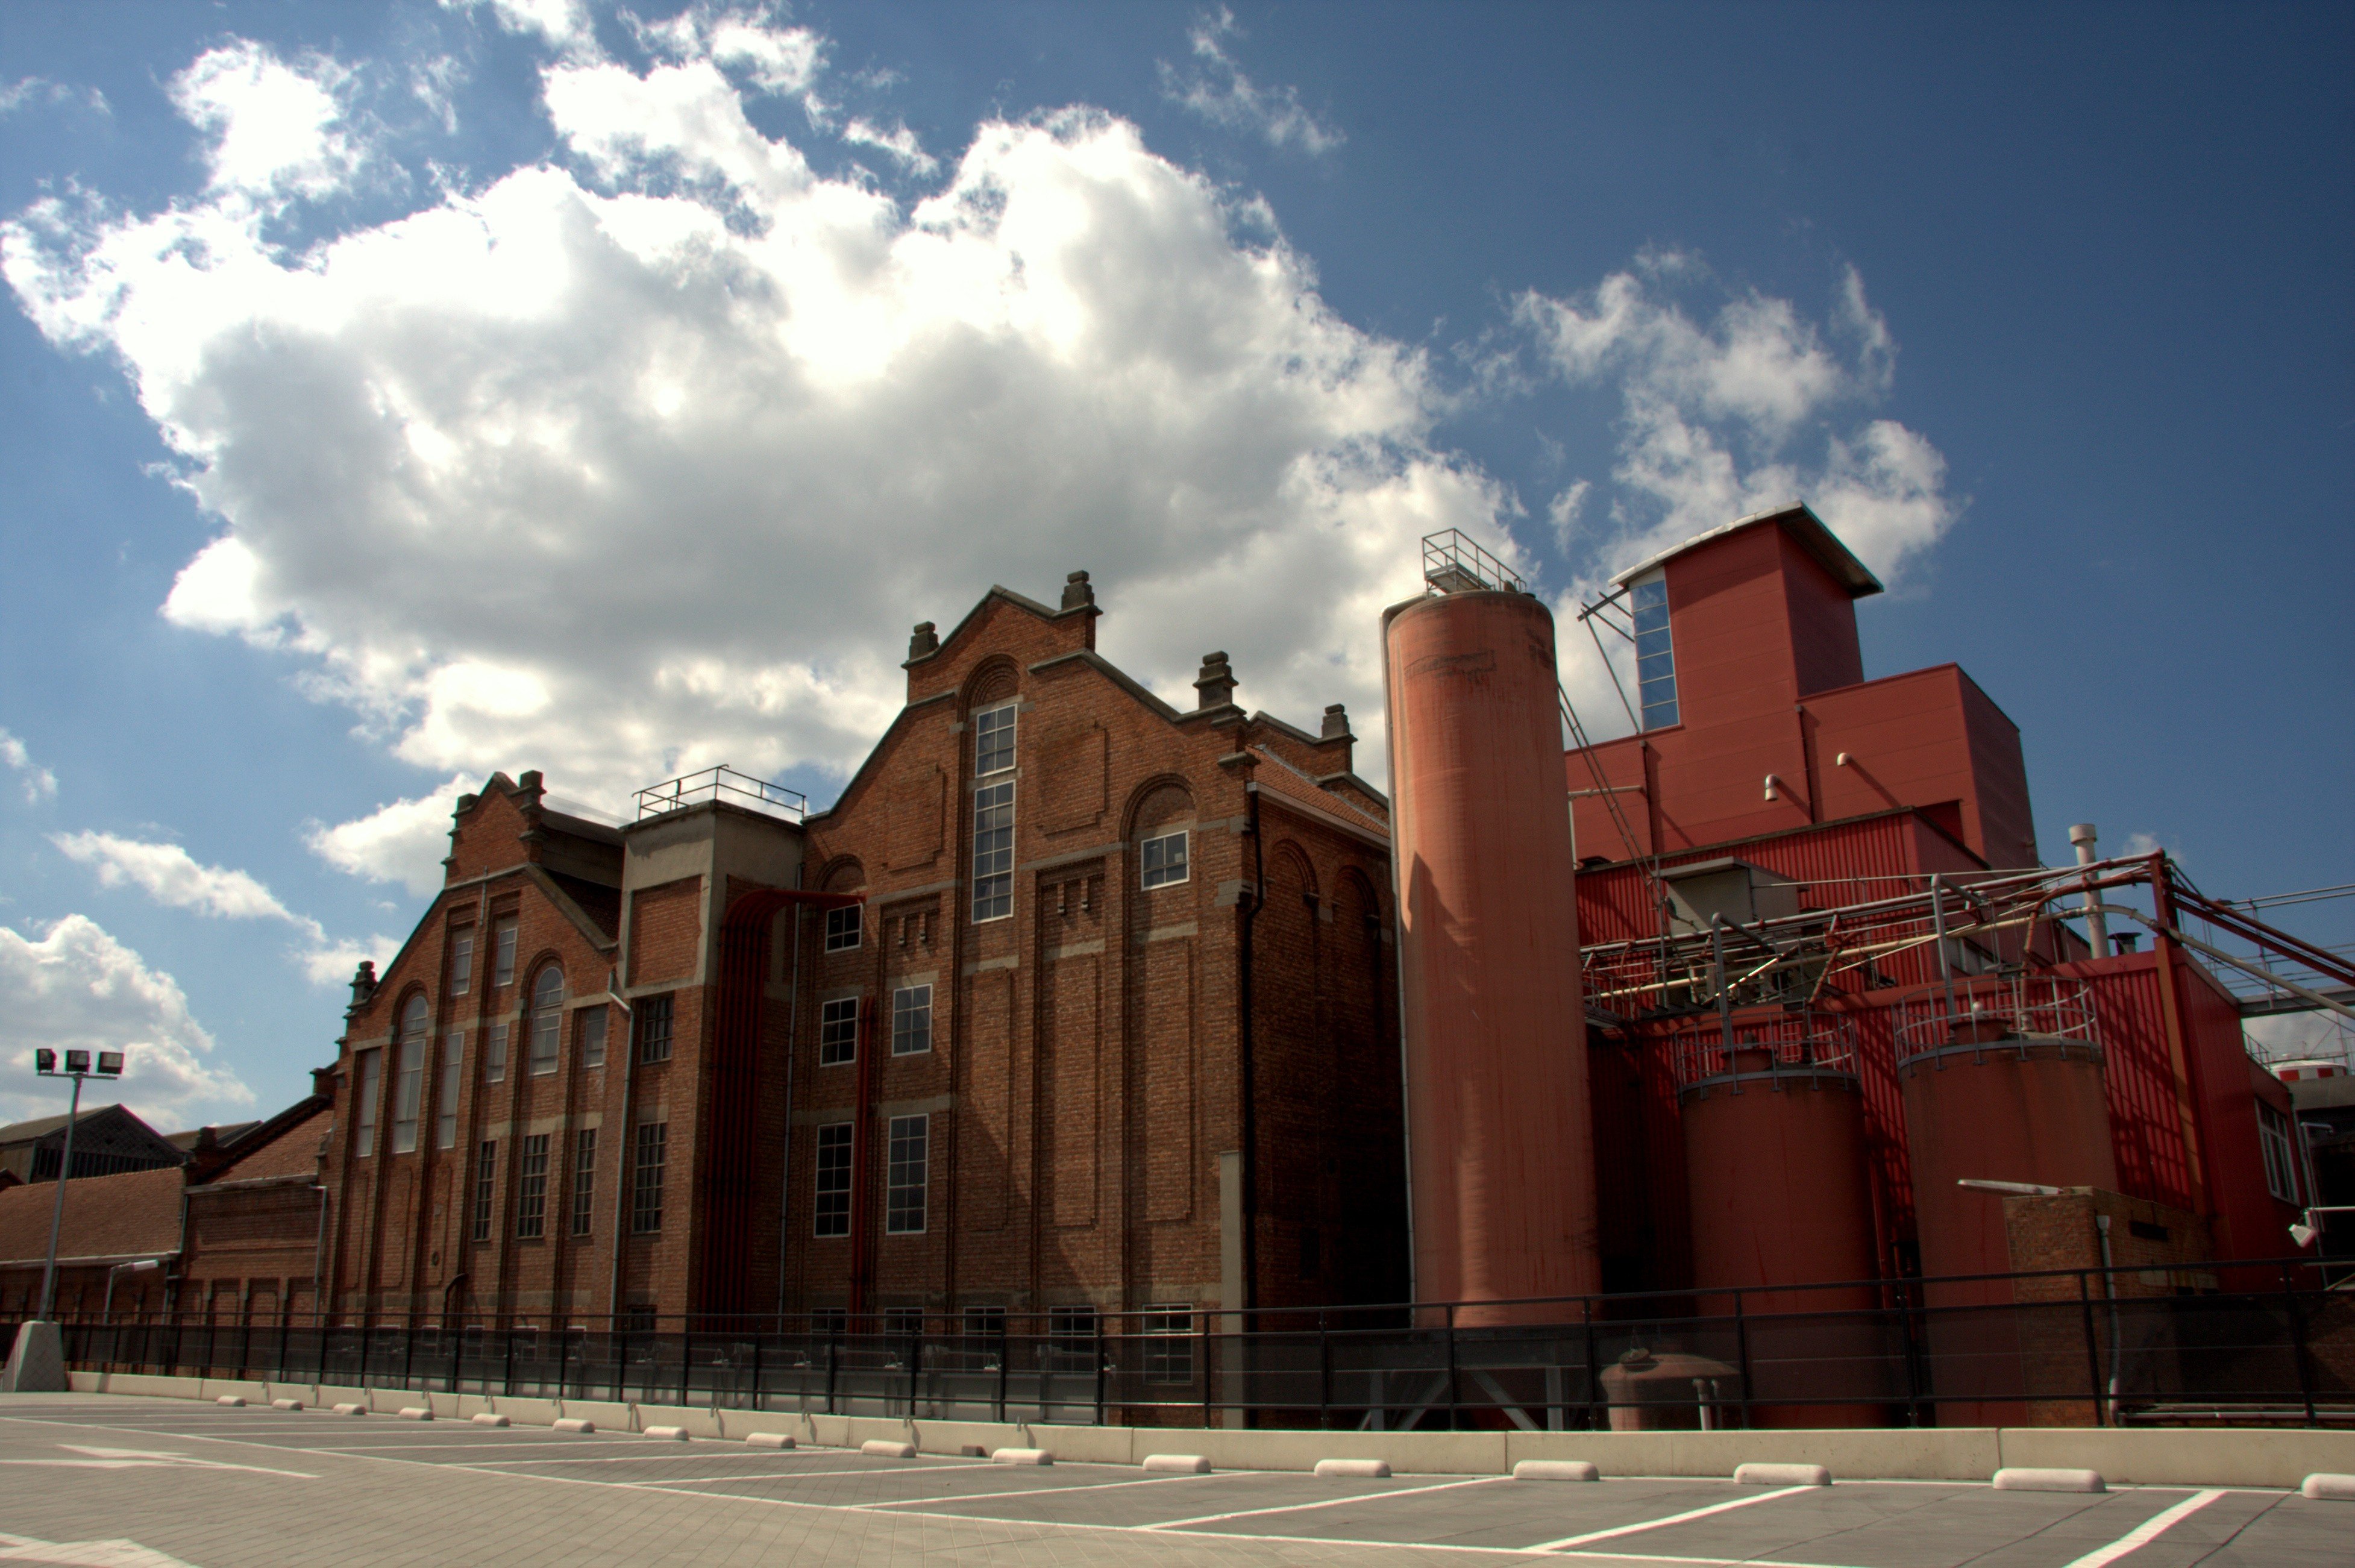 Brouwerijen Alken-Maes  Brauerei aus Belgien